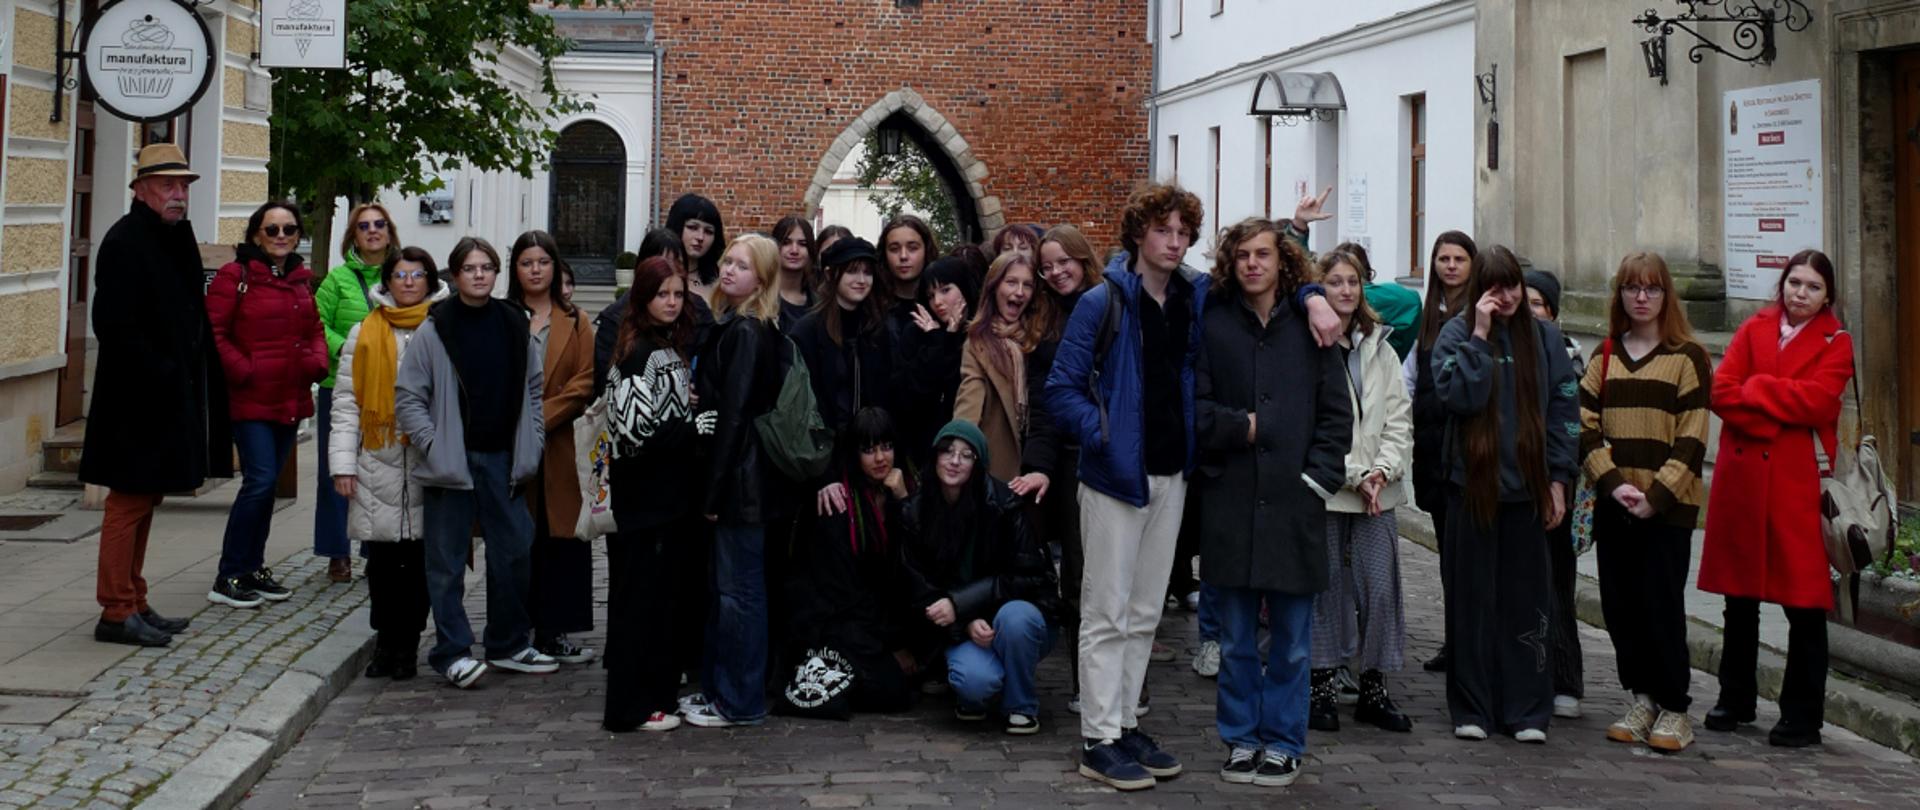 fotografia barwna, na pierwszym planie grupa młodych osób, po lewej stronie mężczyzna w kapeluszu. na drugim planie znajduje się Brama Opatowska